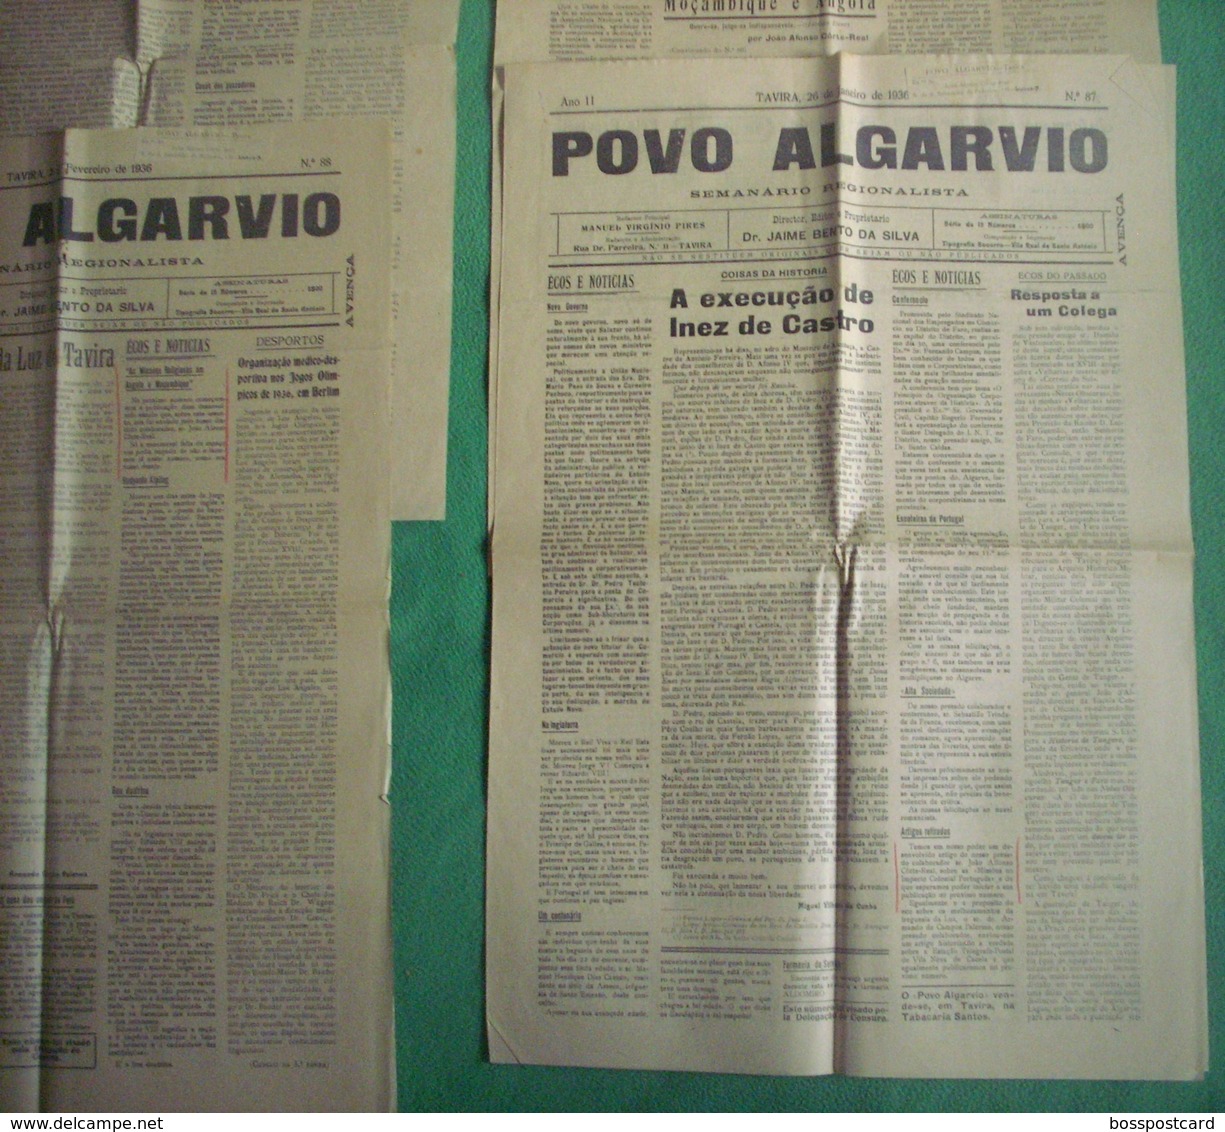 Tavira - 4 Jornais "Povo Algarvio" Nº 87, 88, 89, 92 De 1936 - Imprensa. Faro. - Informaciones Generales